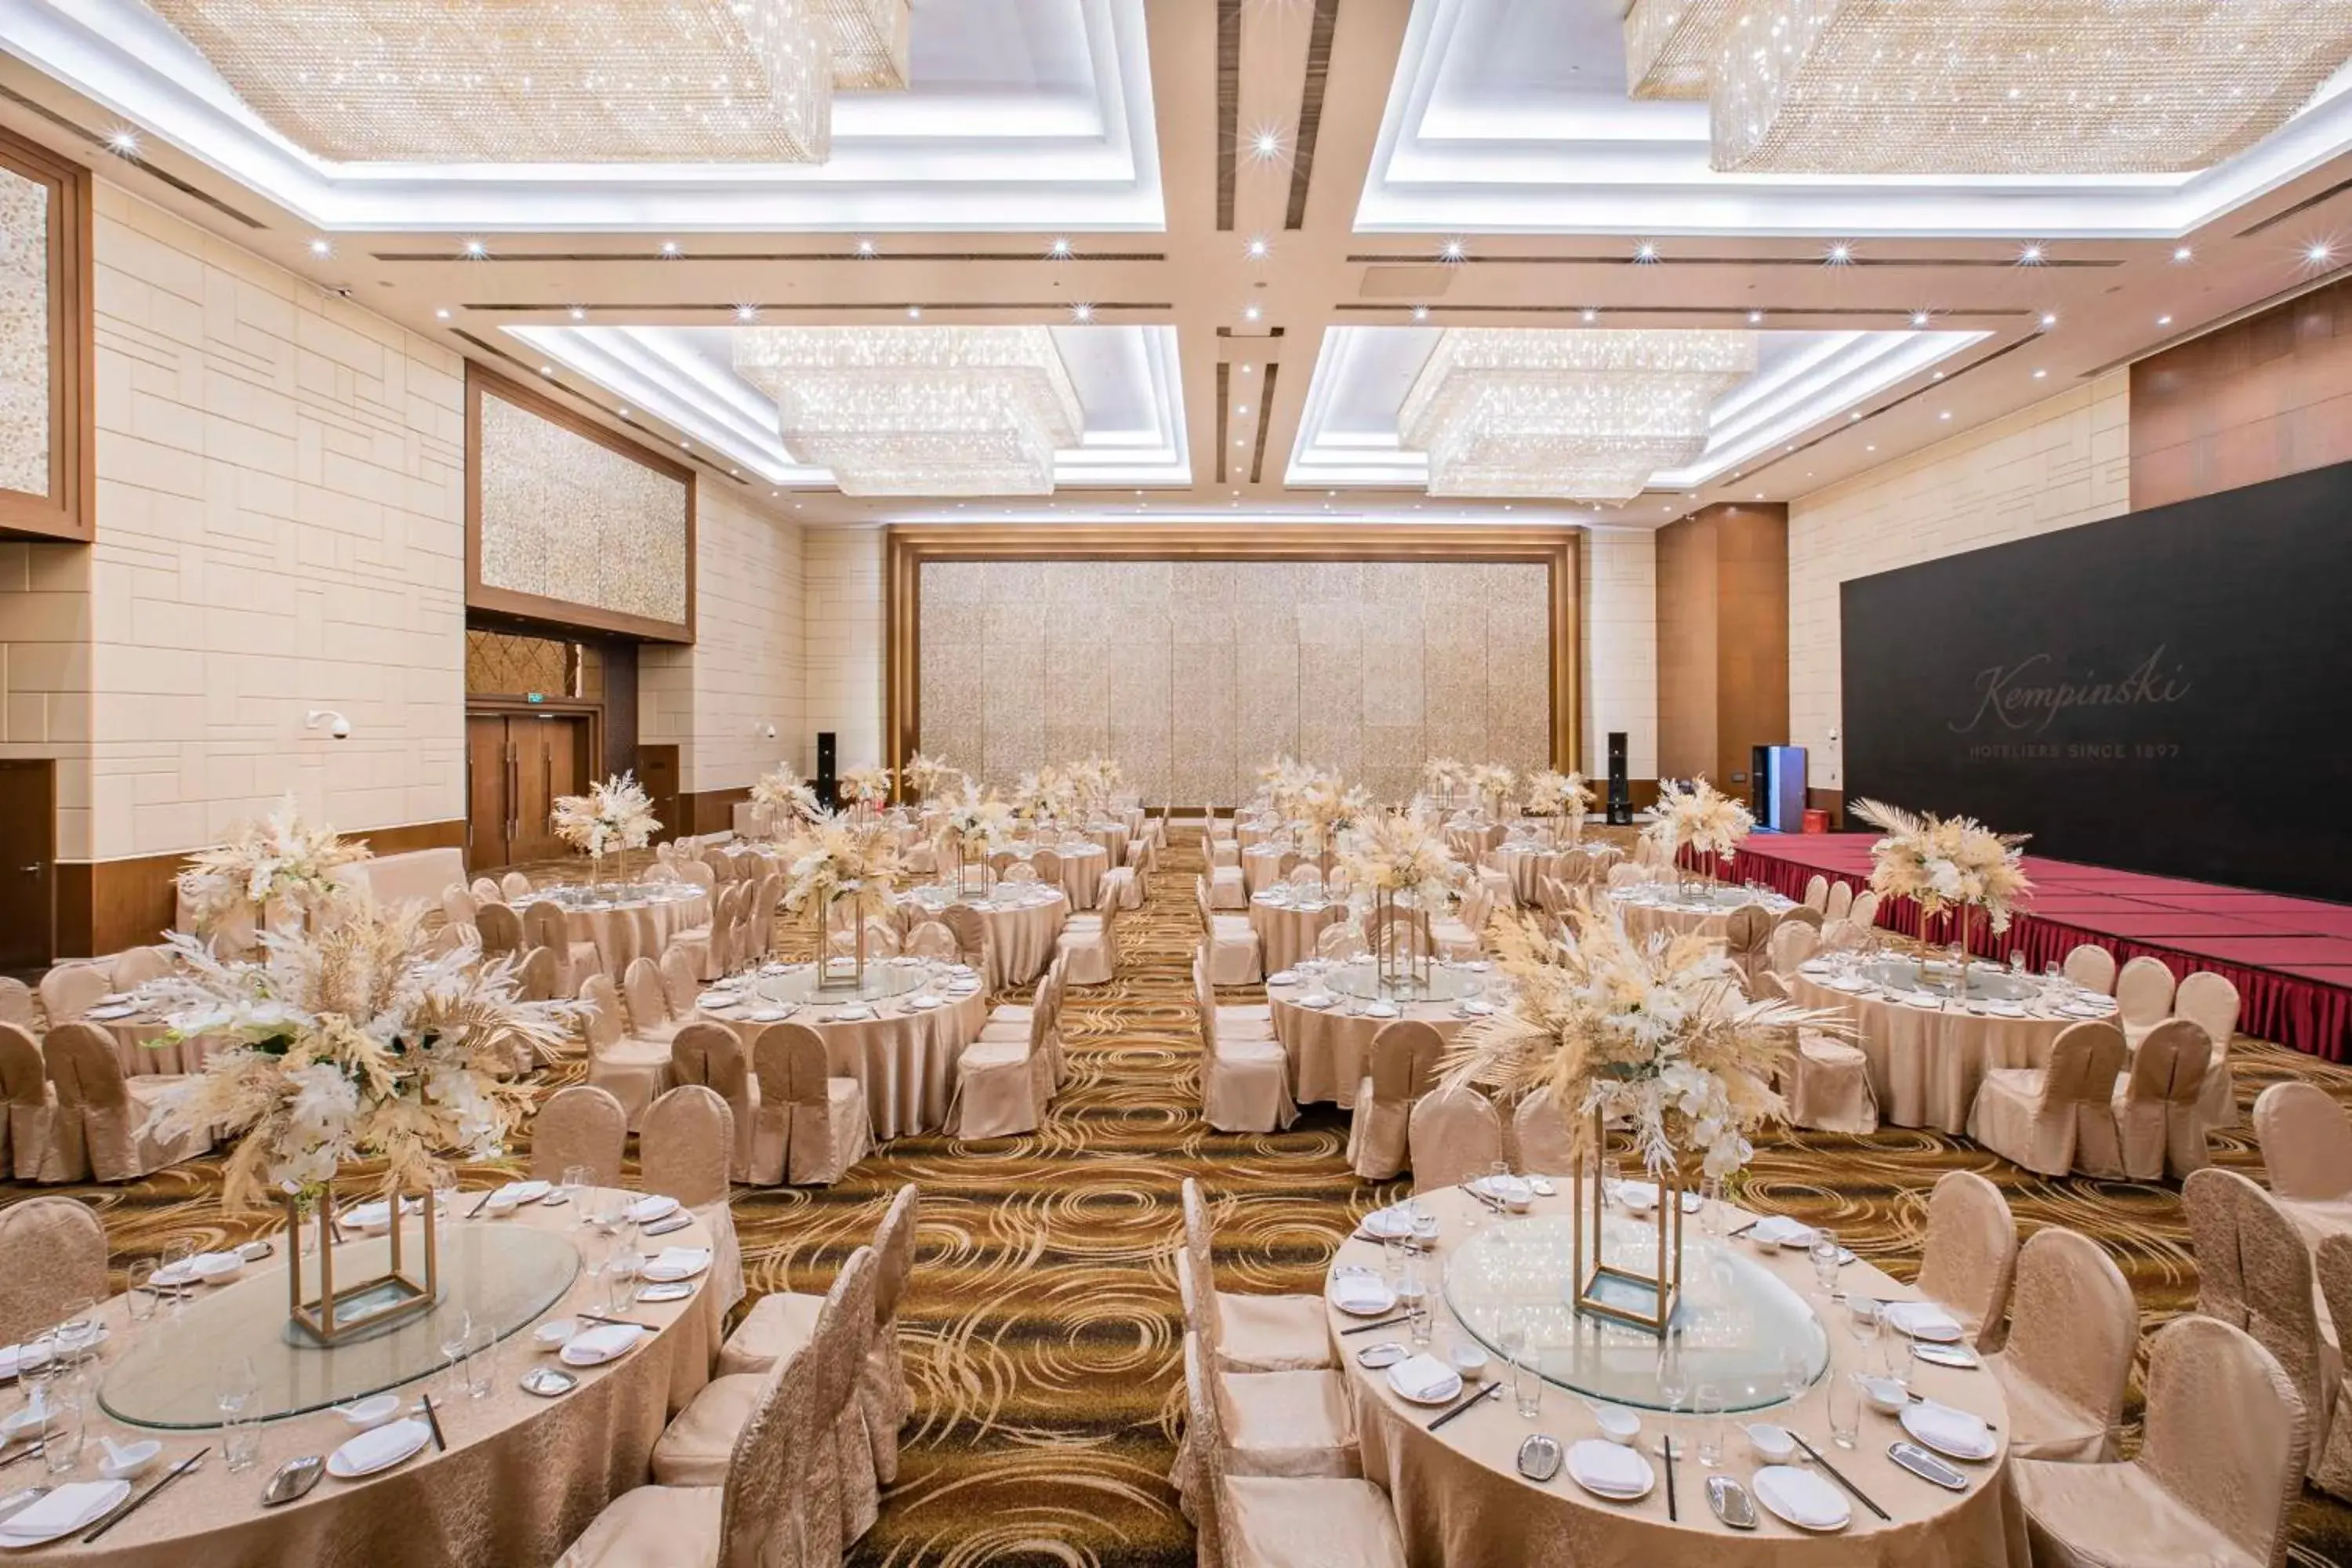 Meeting/conference room, Banquet Facilities in Guiyang Kempinski Hotel